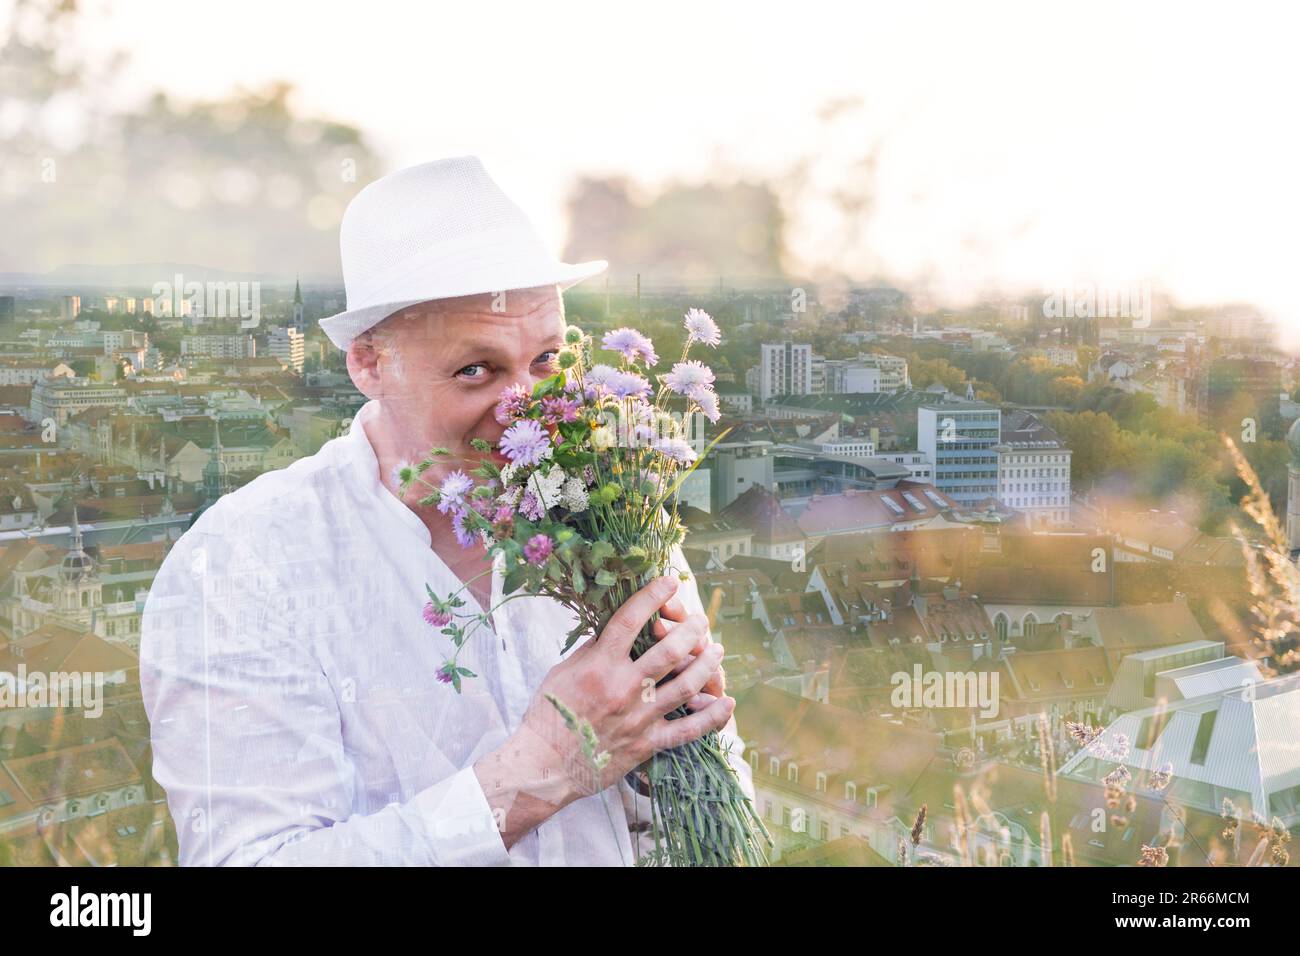 Double exposition. Un beau homme renifle des fleurs dans un bouquet et regarde la caméra. Sur la toile de fond d'une ville prise d'une hauteur. Foc différent Banque D'Images